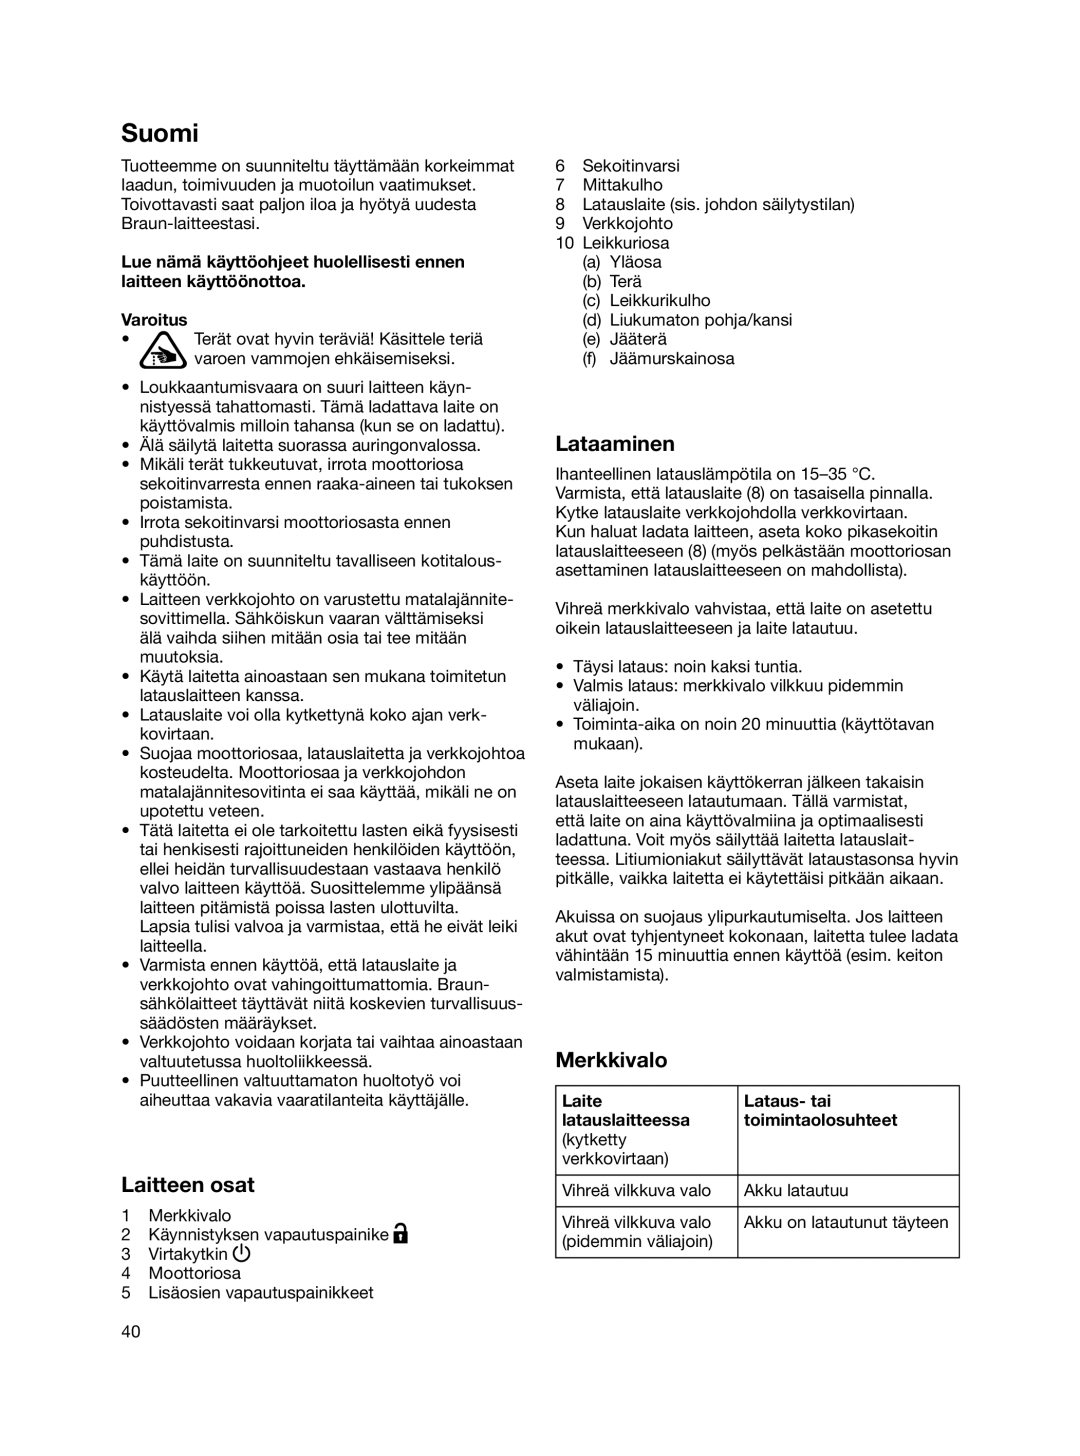 Braun MR 740 CC manual Suomi, Laitteen osat, Lataaminen, Merkkivalo 